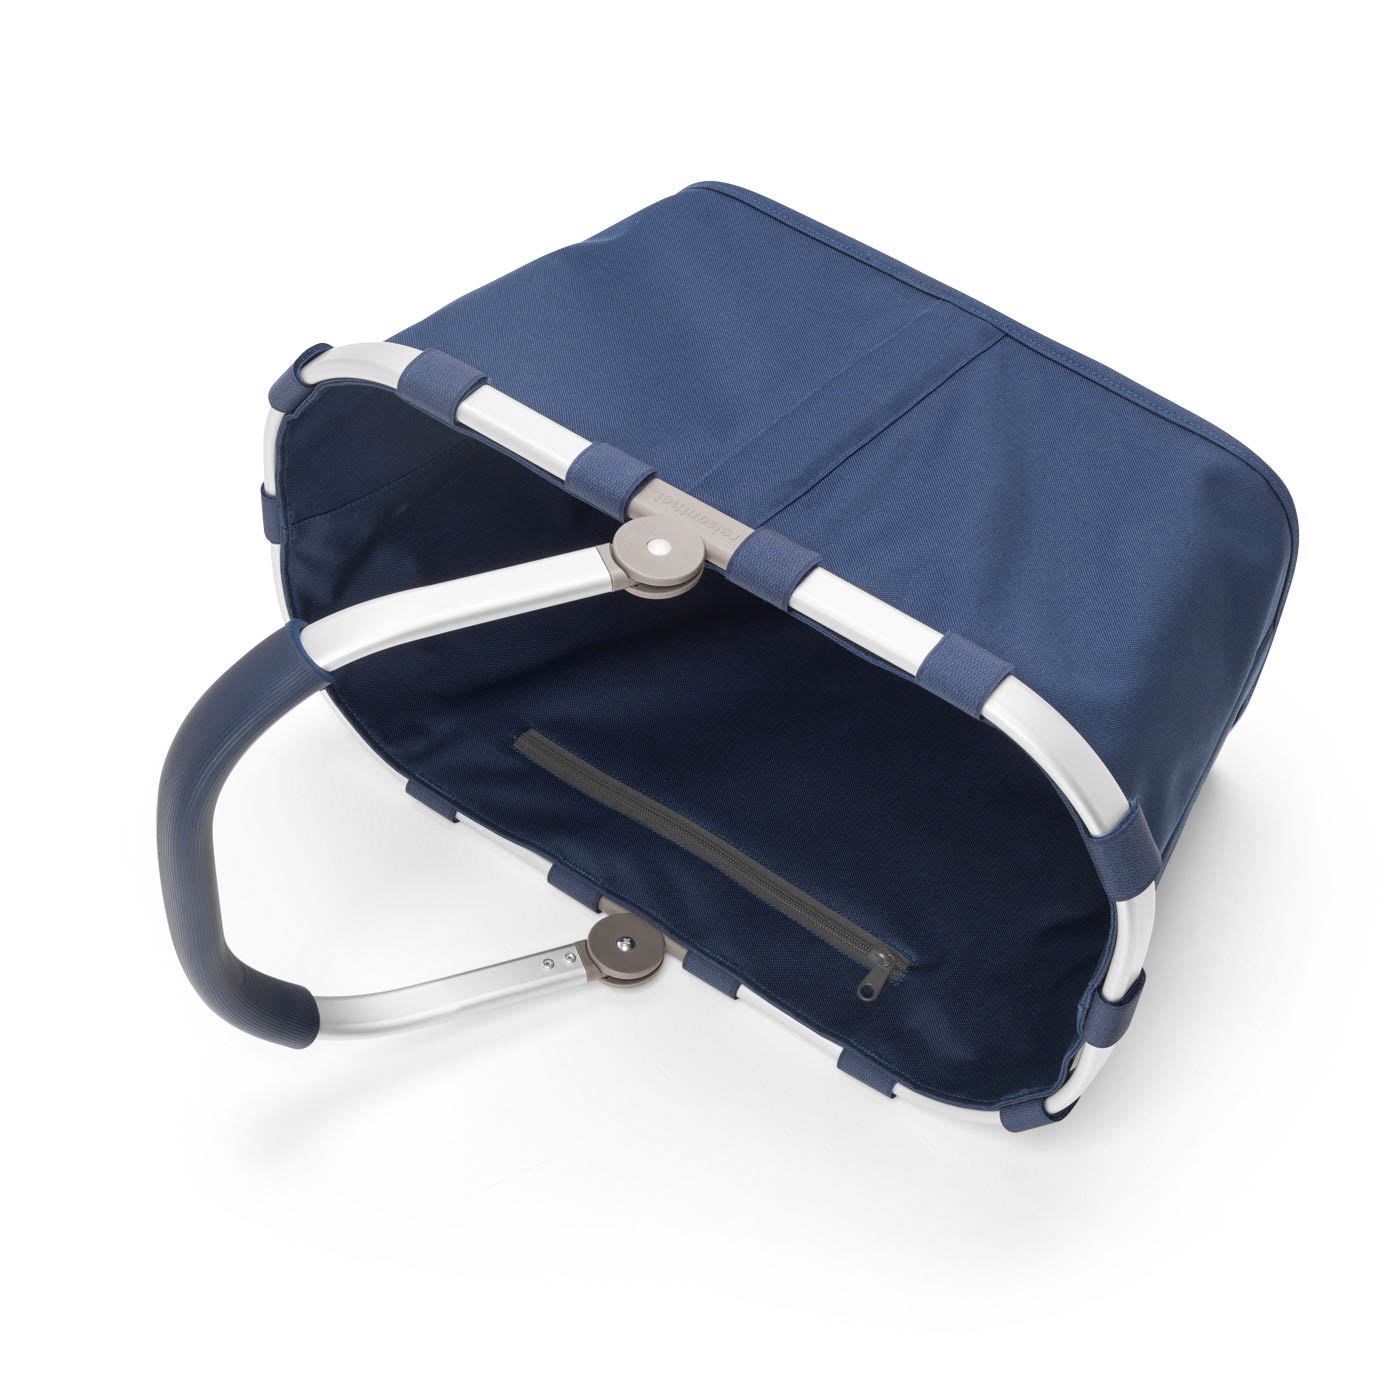 Nákupní košík Carrybag dark blue_1